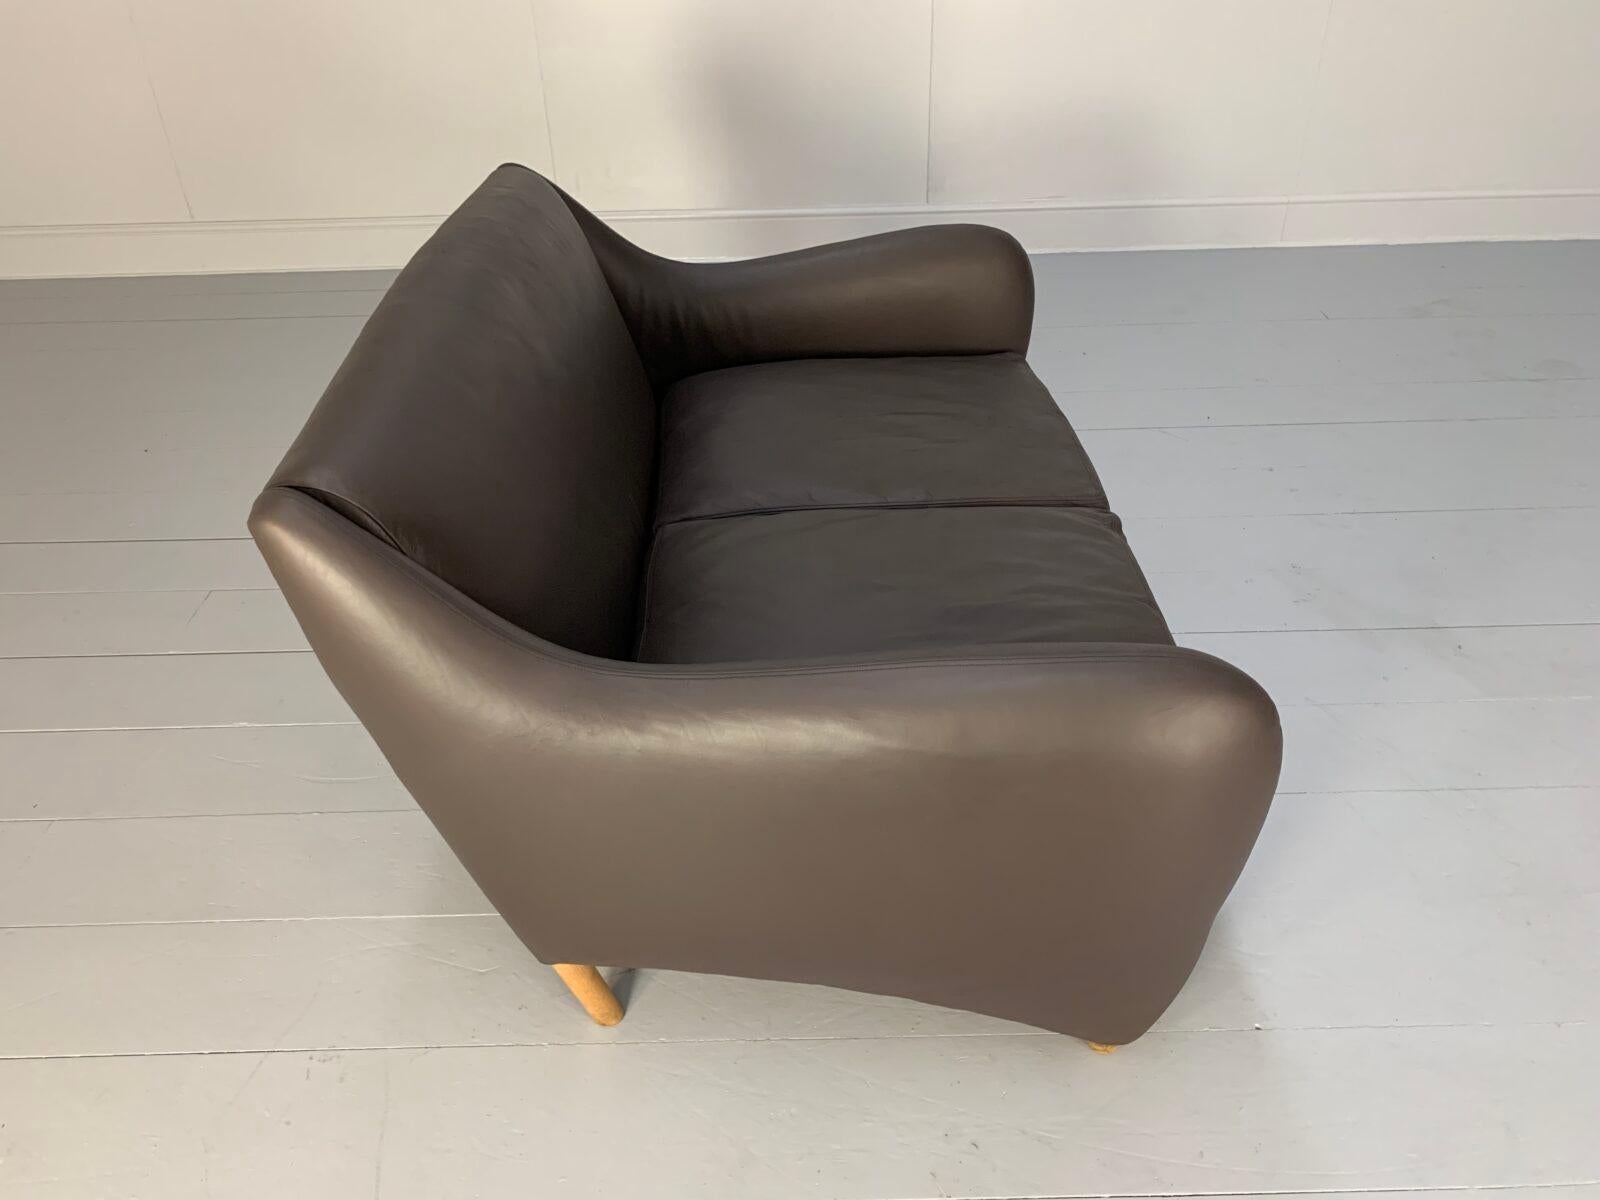 SCP Conran Matthew Hilton “Balzac” 2-Seat Sofa – In Dark Brown Leather 3